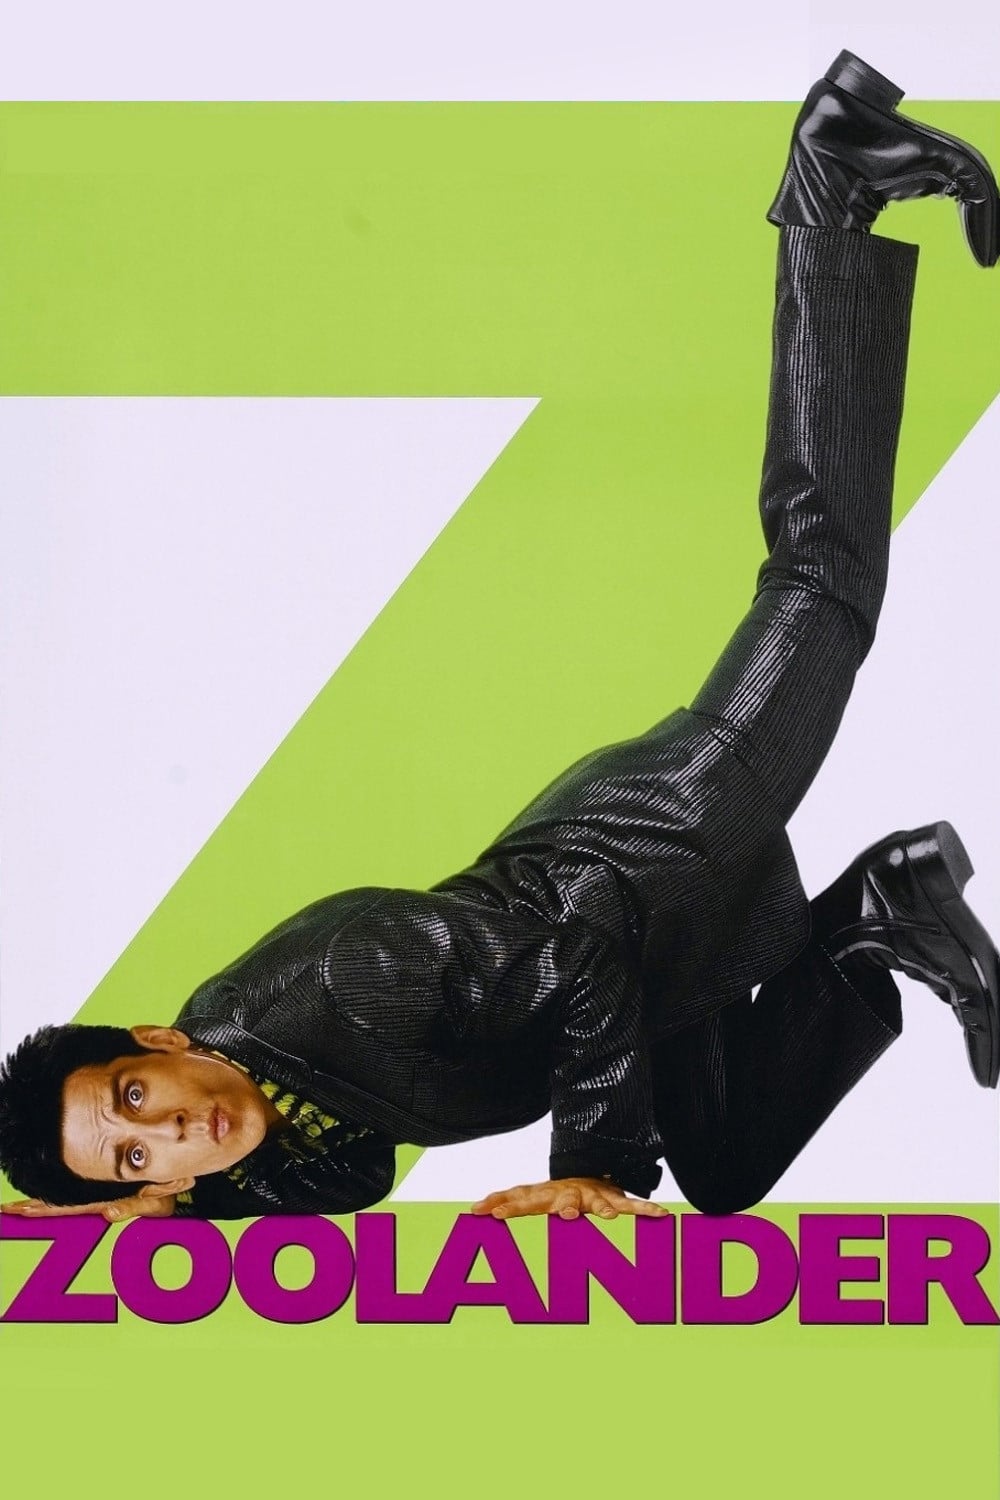 Affiche du film "Zoolander"